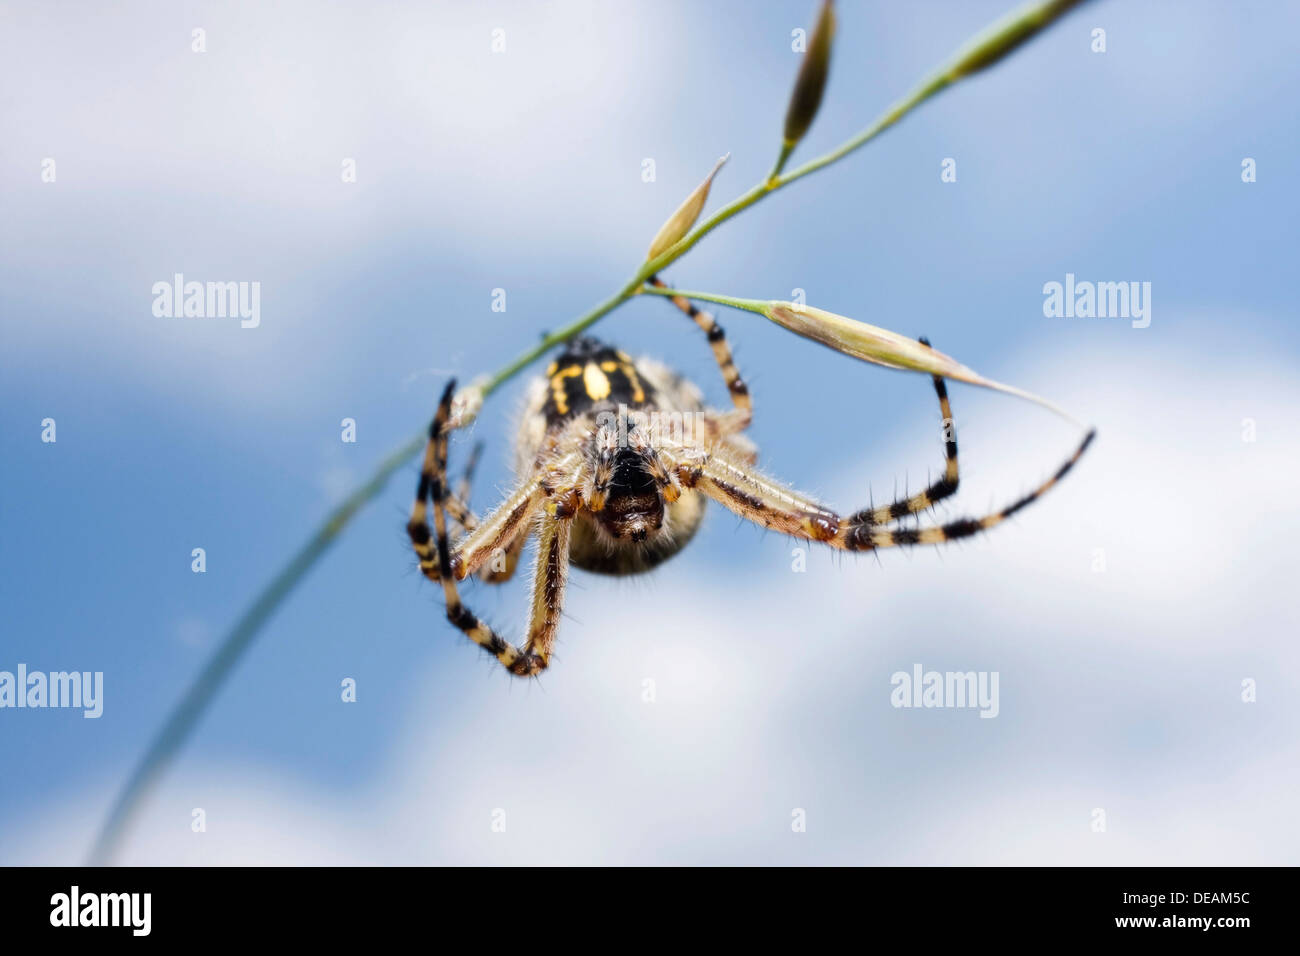 Oak spider (Aculepeira ceropegia) Stock Photo